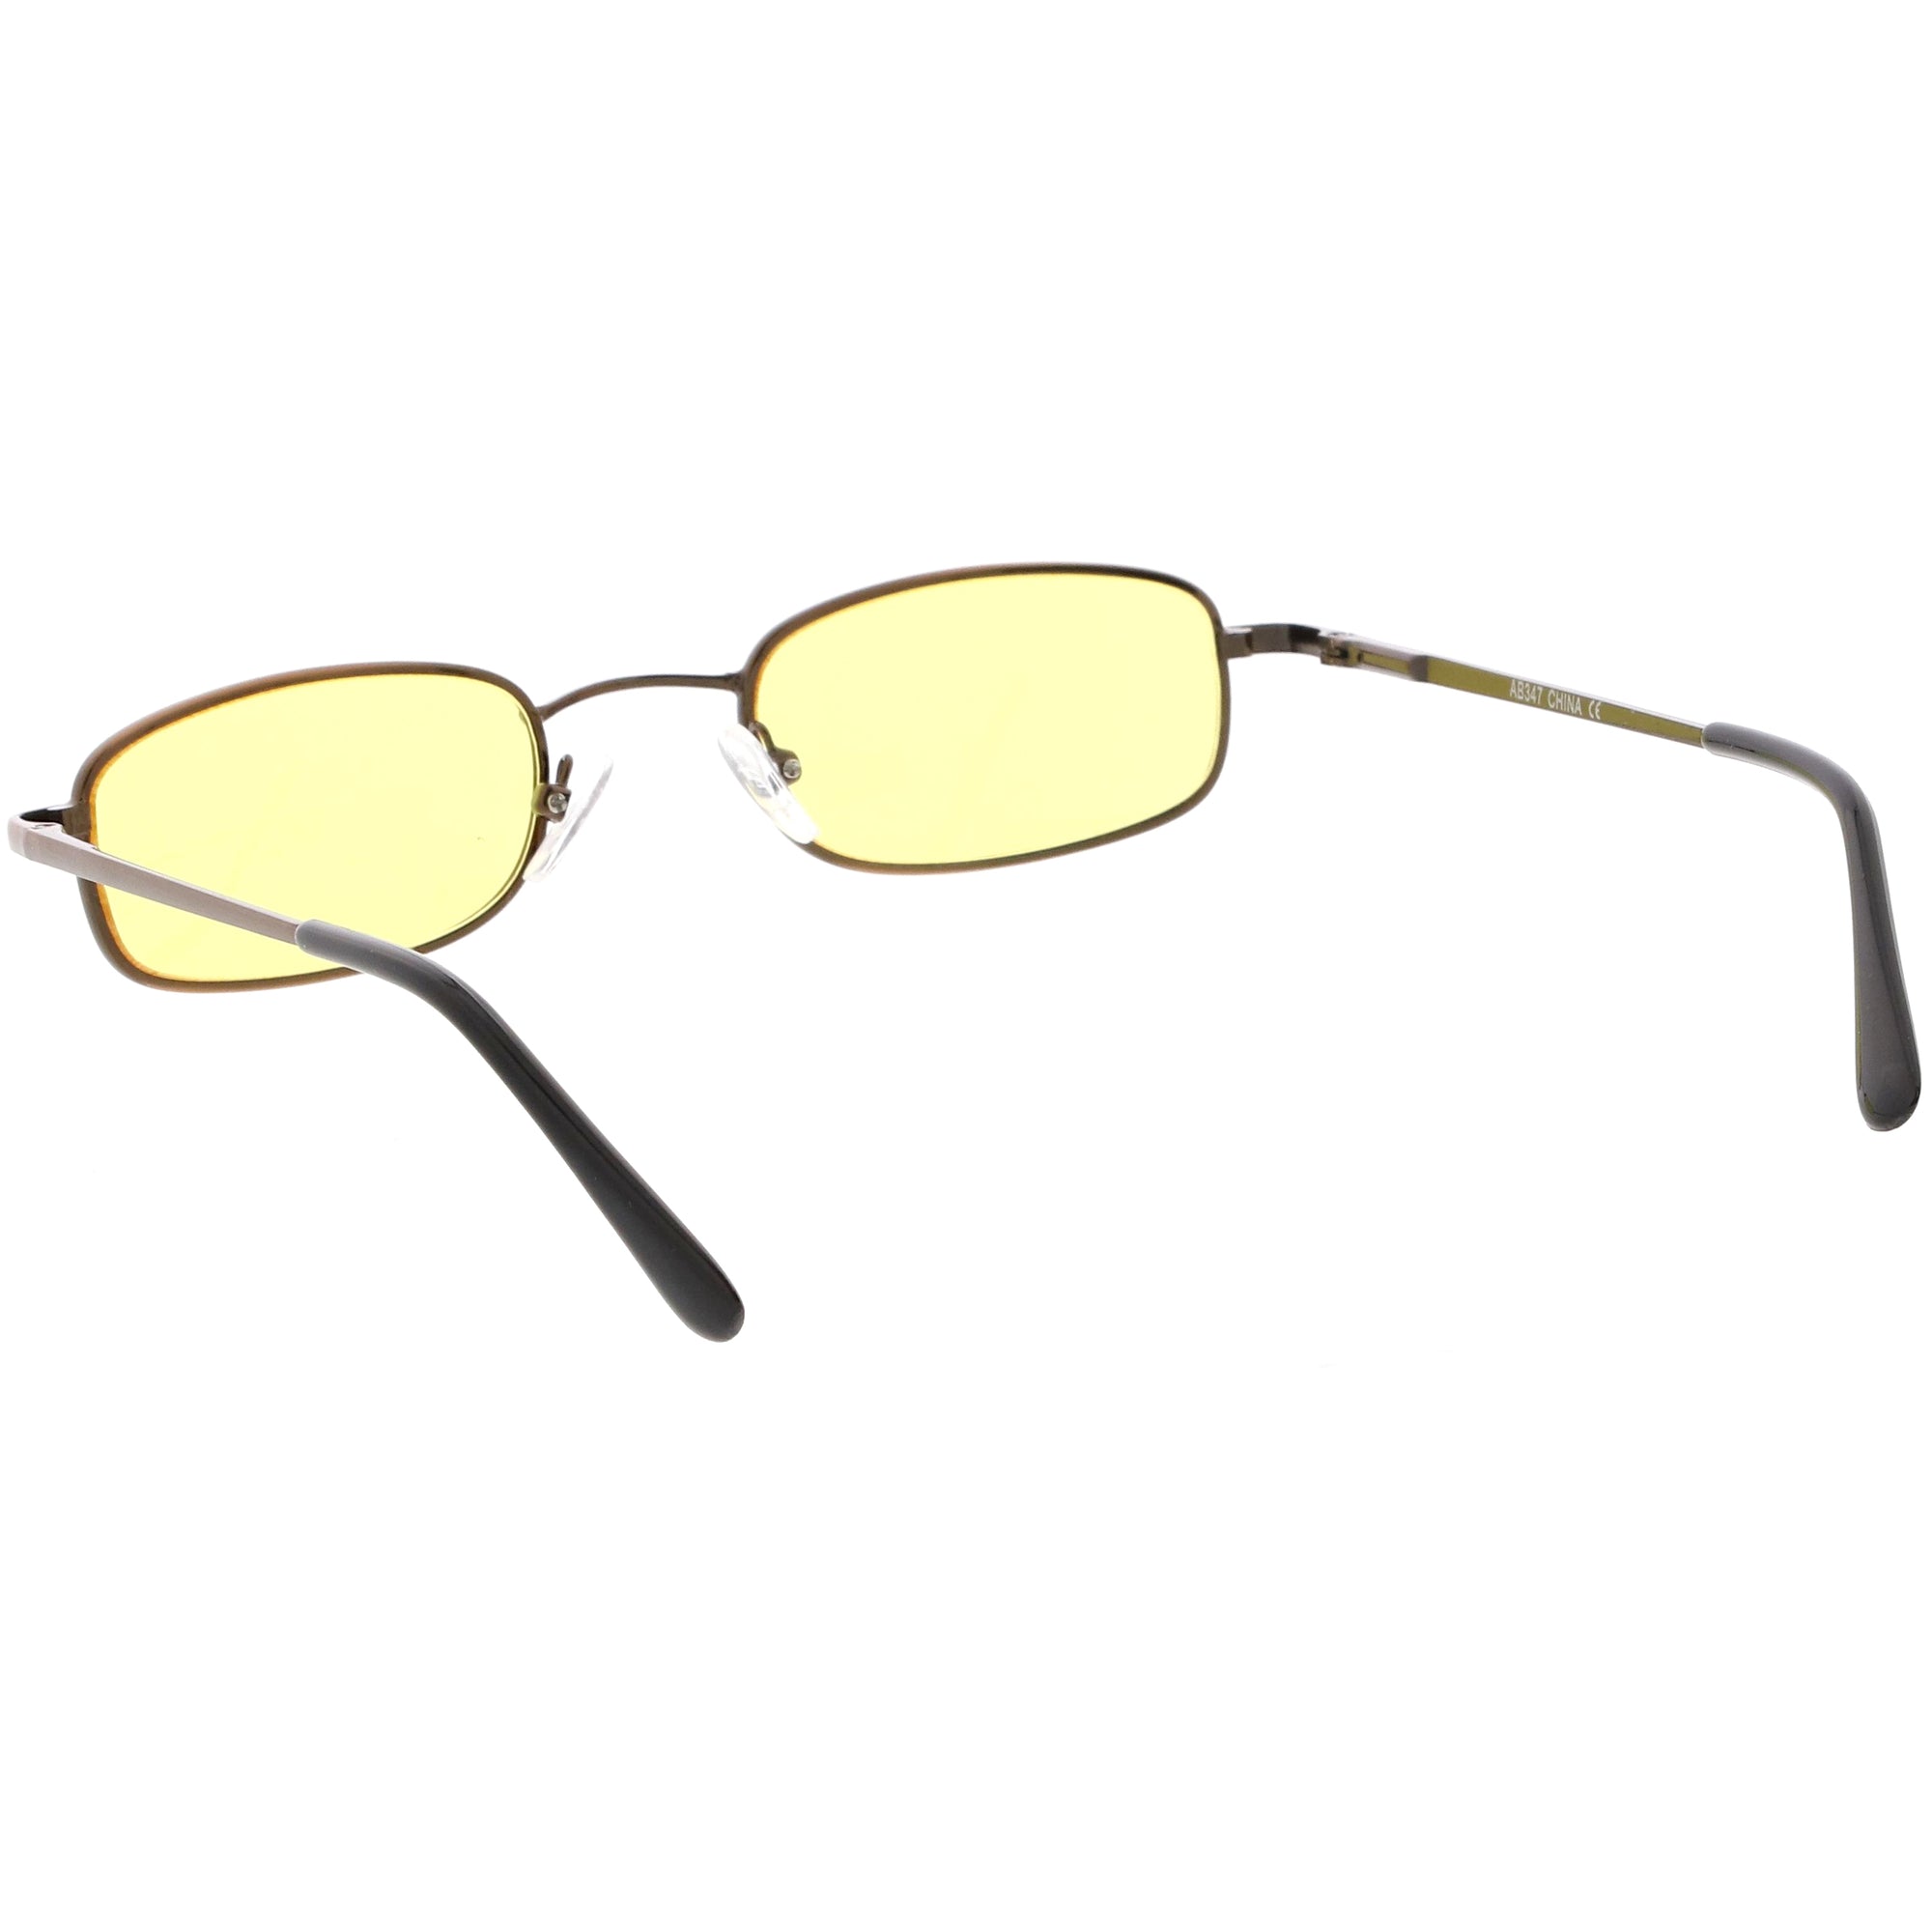 Retro 1990s Small Rectangle Color Tone Metal Sunglasses Zerouv 